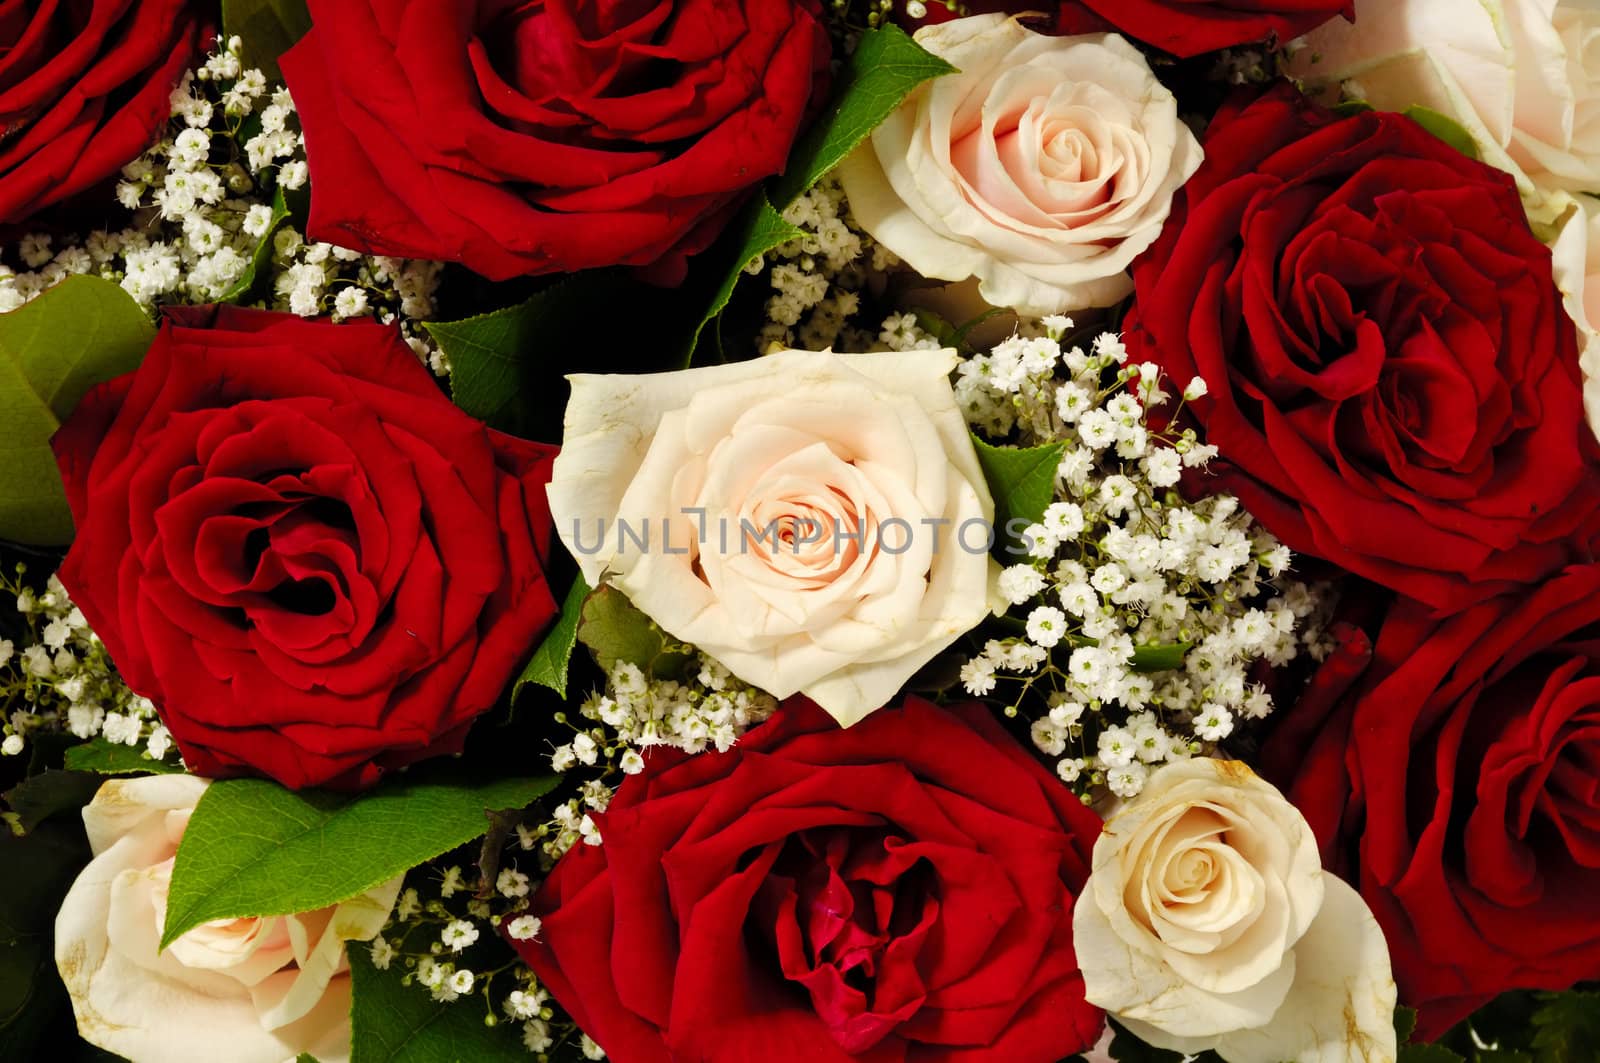 Rose bouquet by cfoto